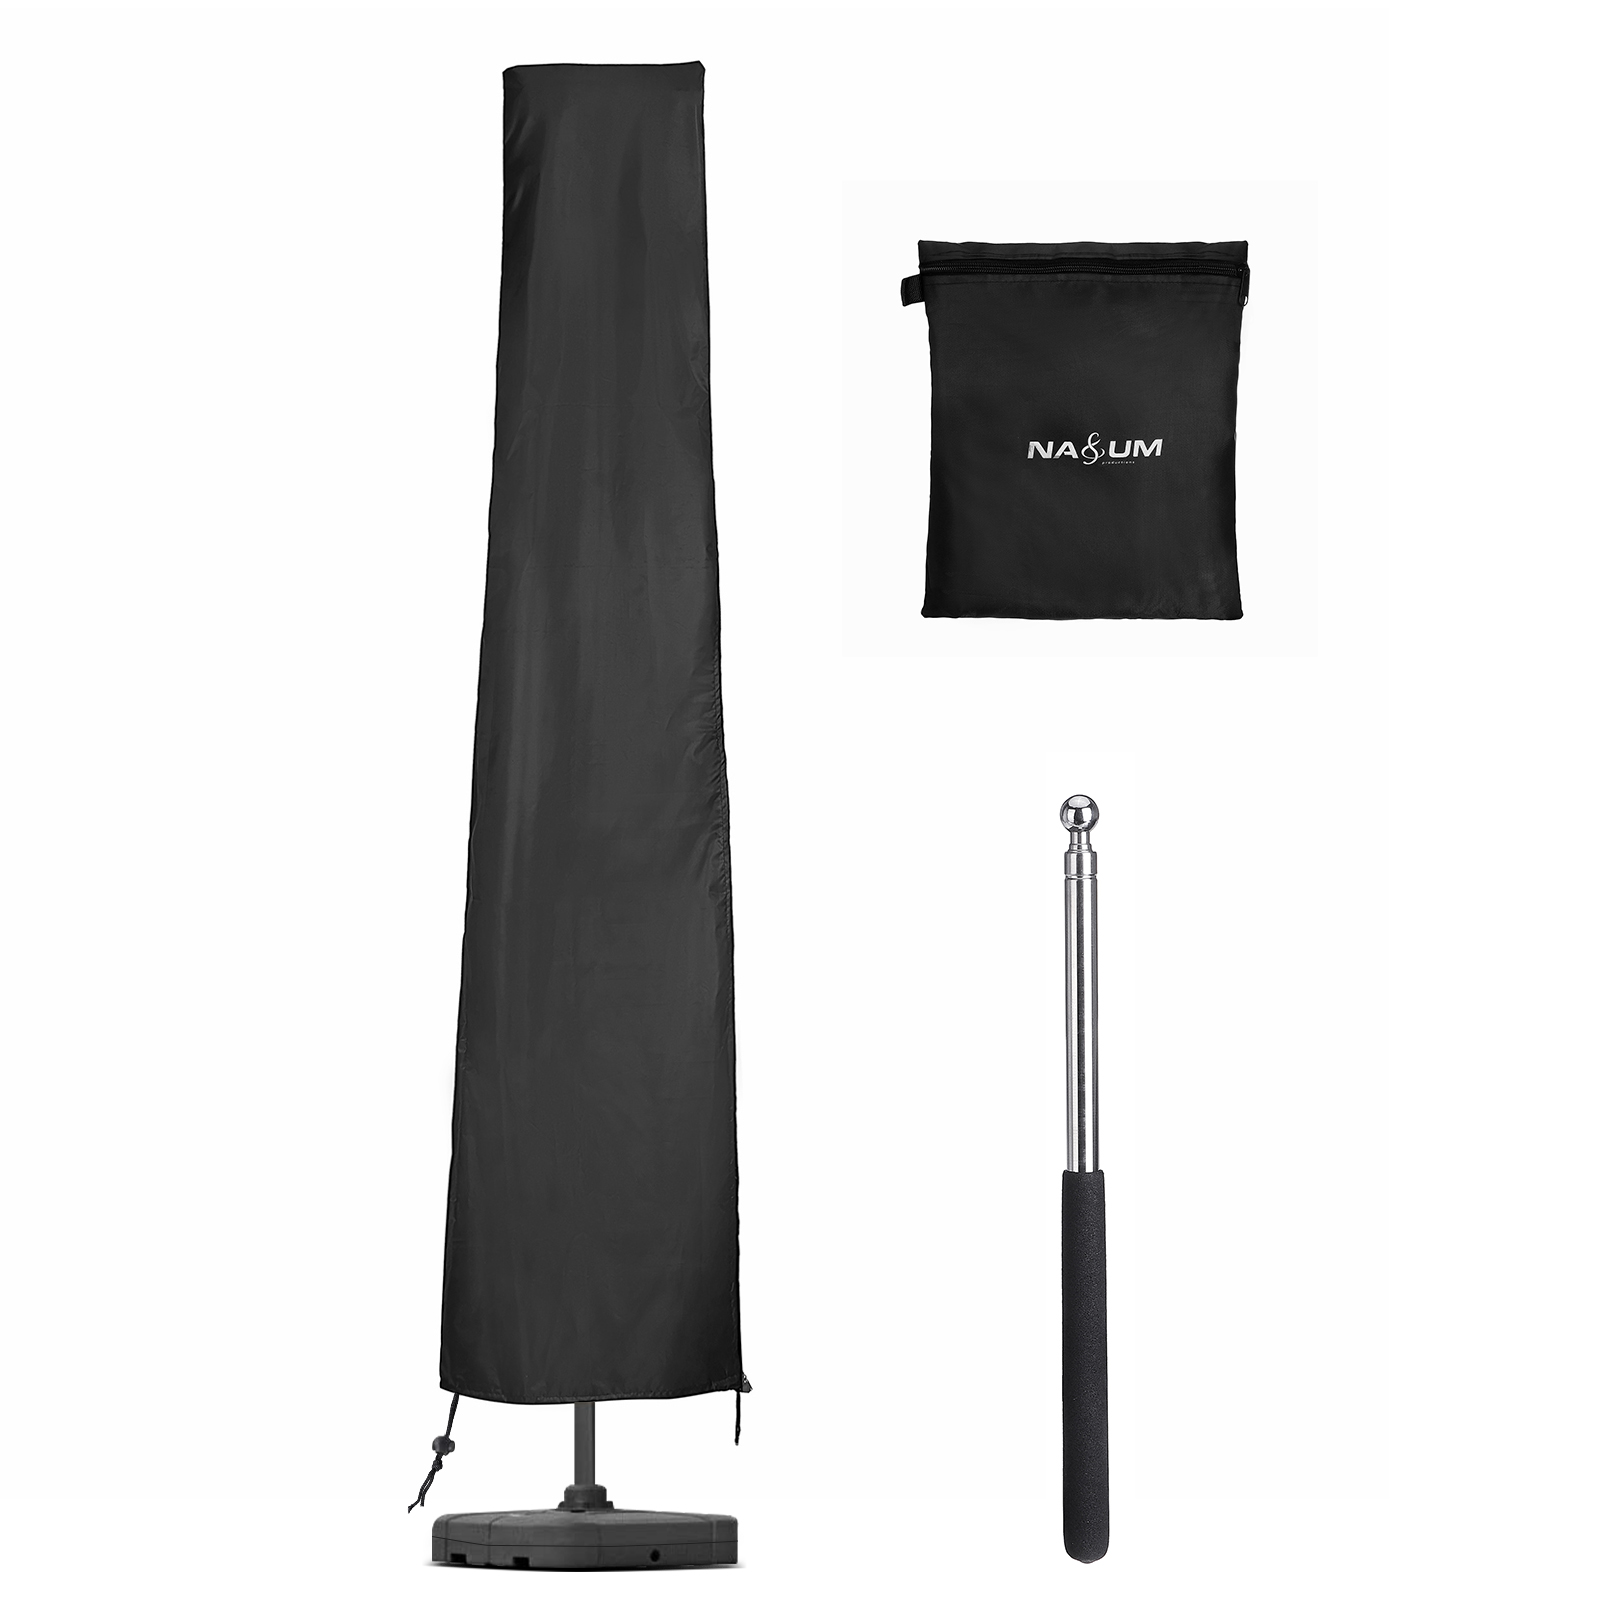 600D-Nylon-Oxford-Cloth-T-Shaped-Umbrella-Cover-Wind-resistant-Anti-UV-Umbrella-Cover-1885729-9